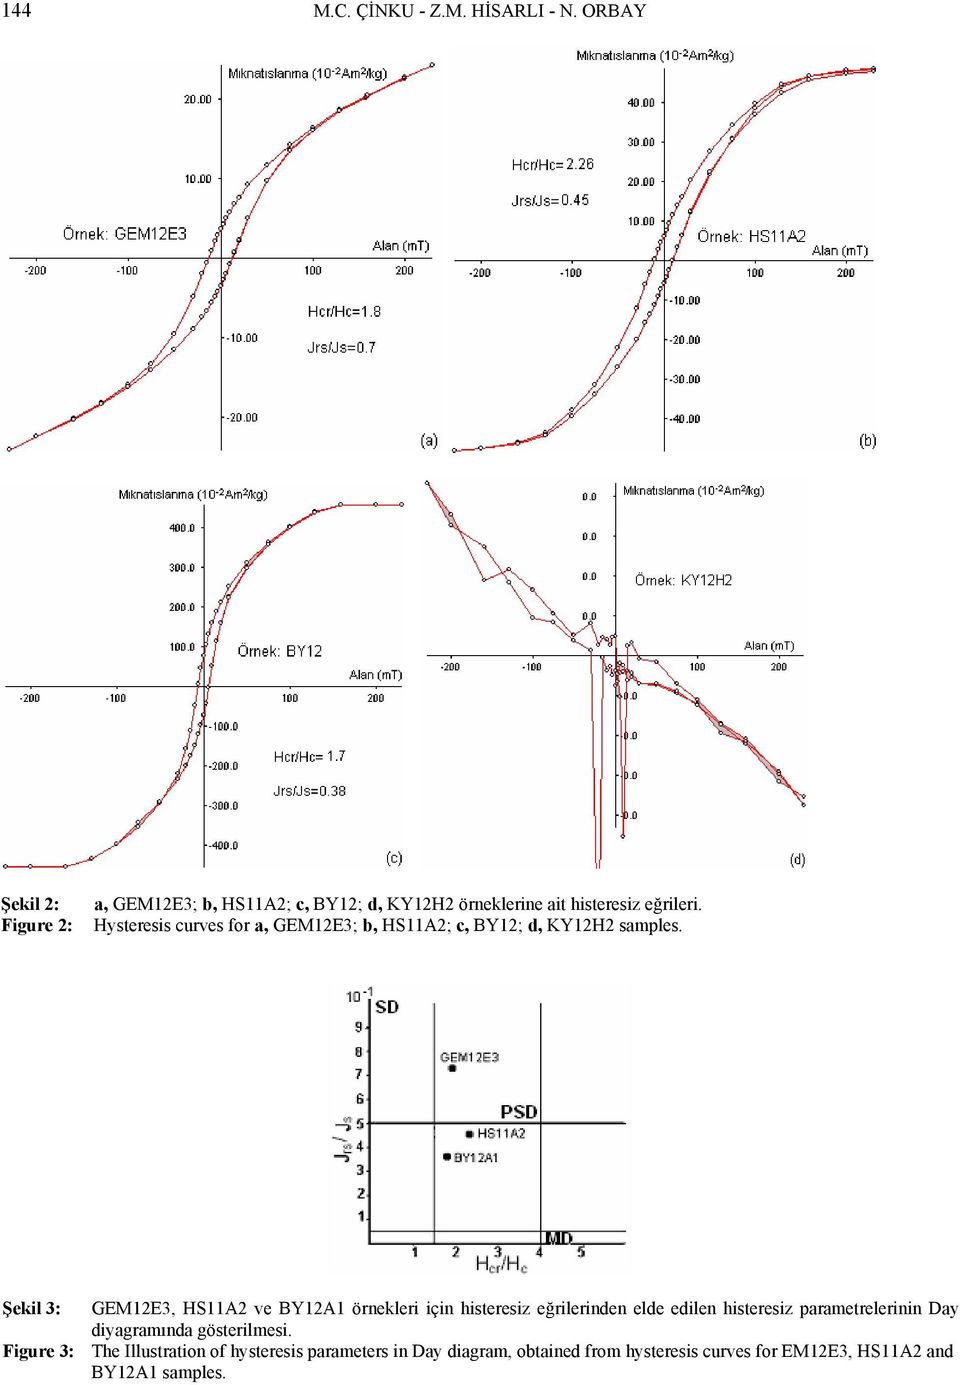 Hysteresis curves for a, GEM12E3; b, HS11A2; c, BY12; d, KY12H2 samples.